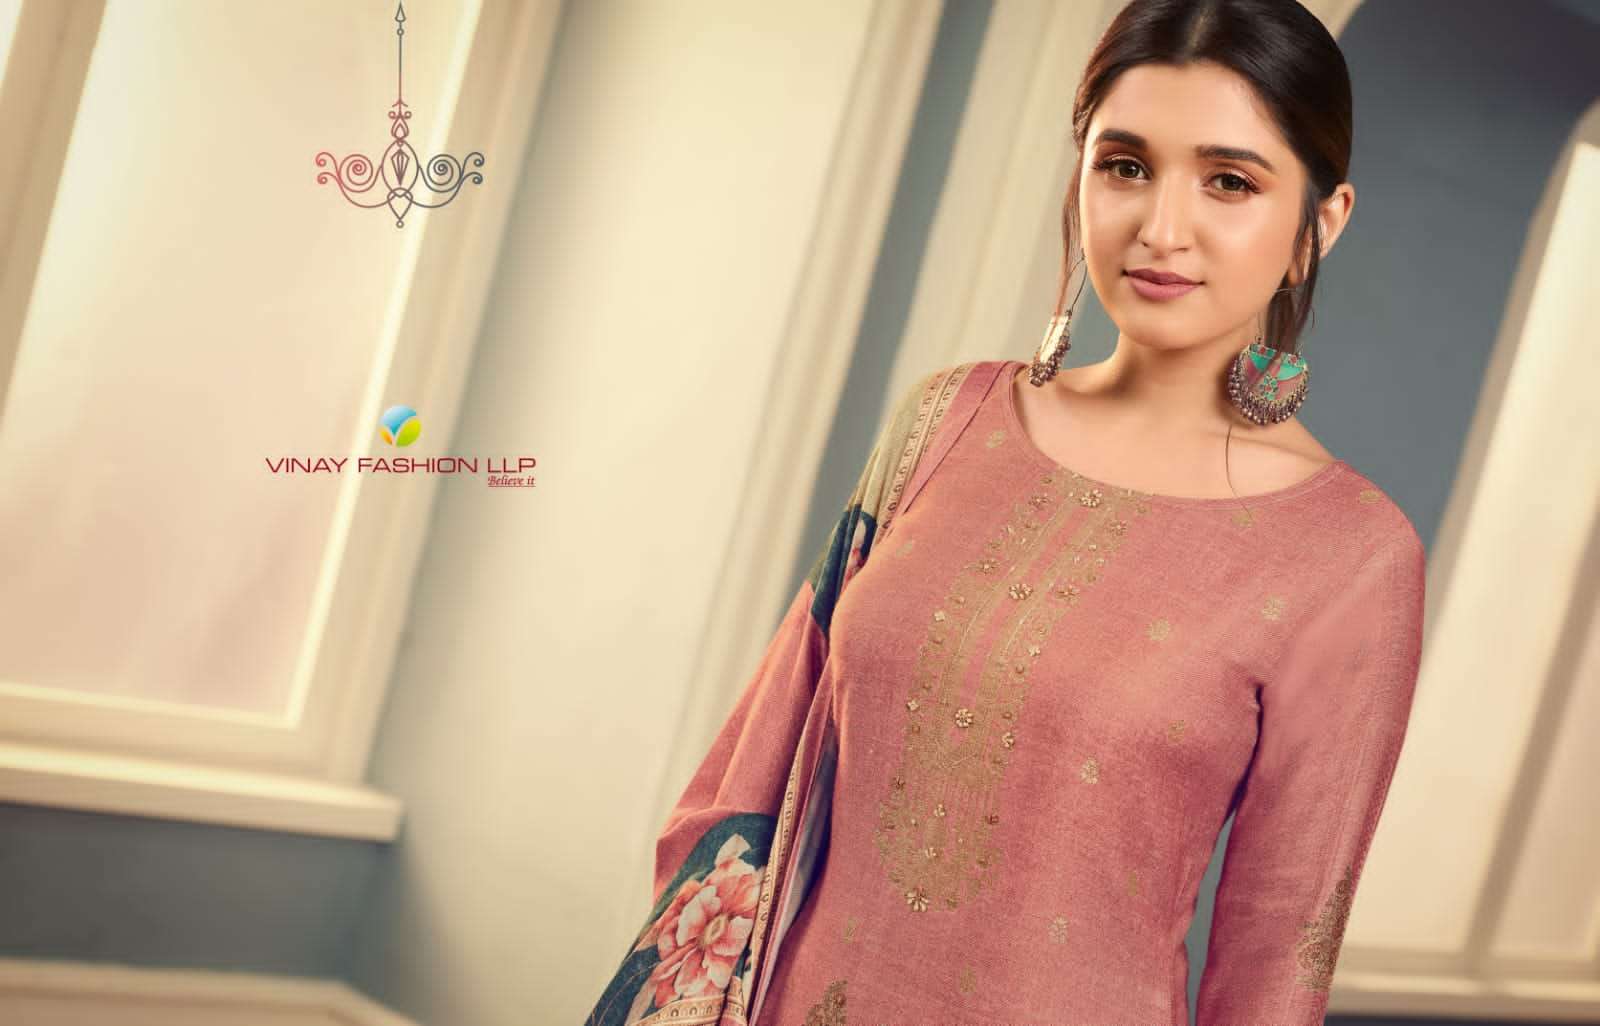 vinay fashion kervin dharini 62521-62526 series fancy pashmina salwar kameez wholesale price 